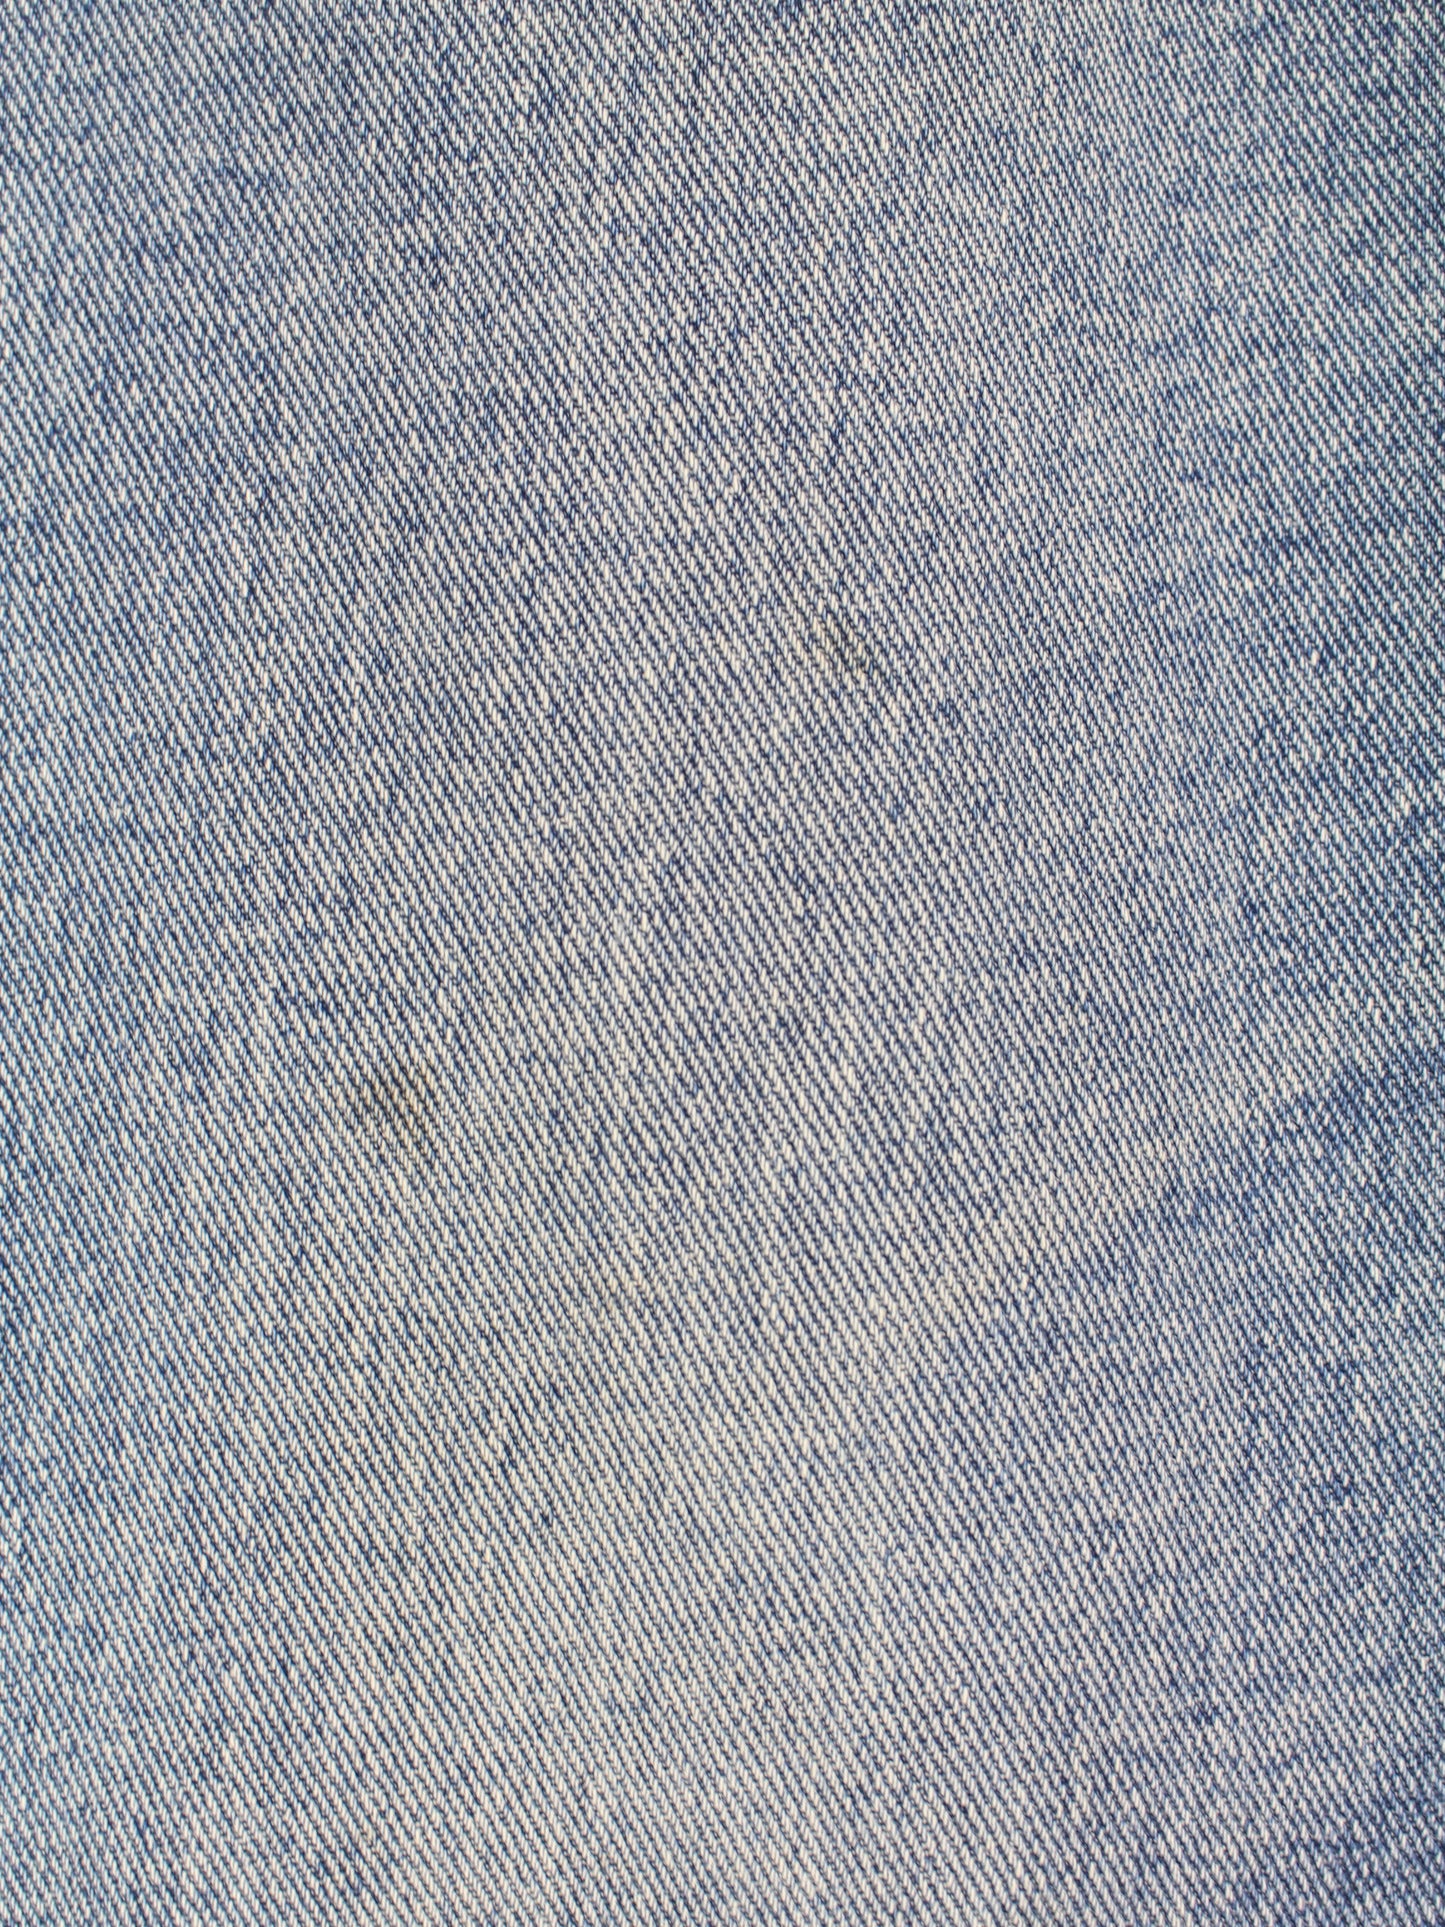 Wrangler Jeans Blau W38 L32